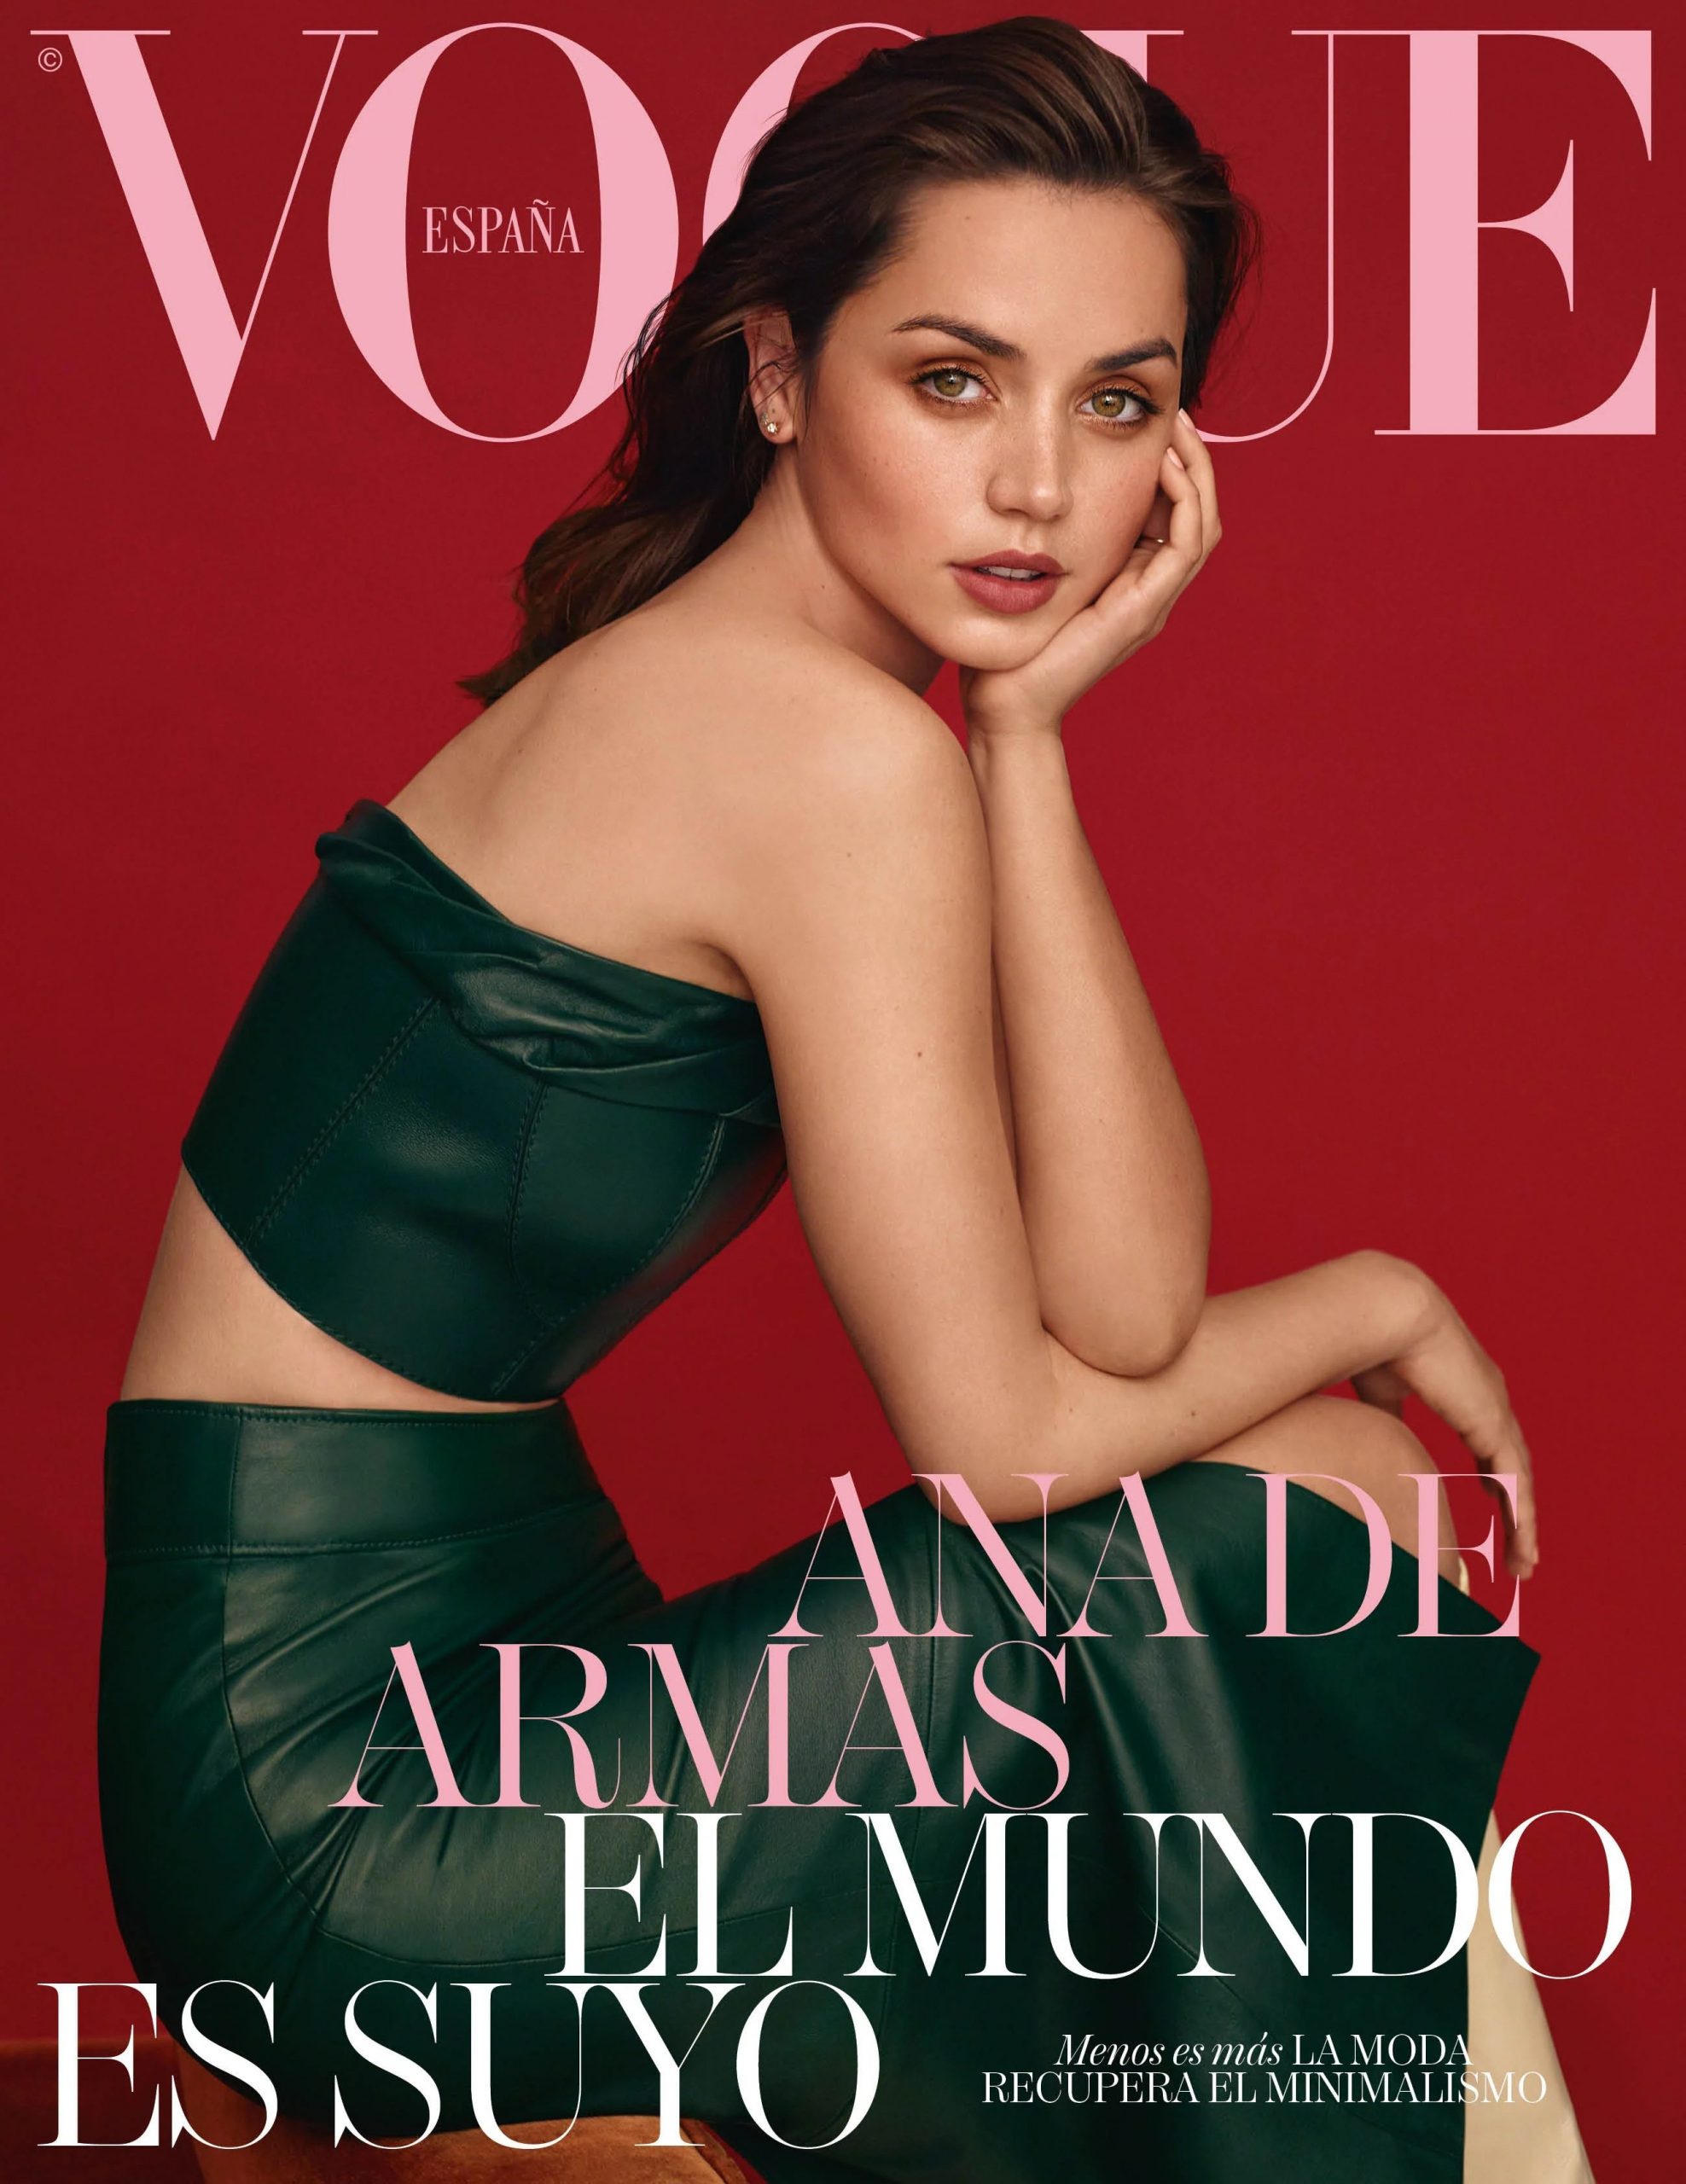 Ana de Armas Sexy - Vogue Spain April 2020 Issue (23 Photos)